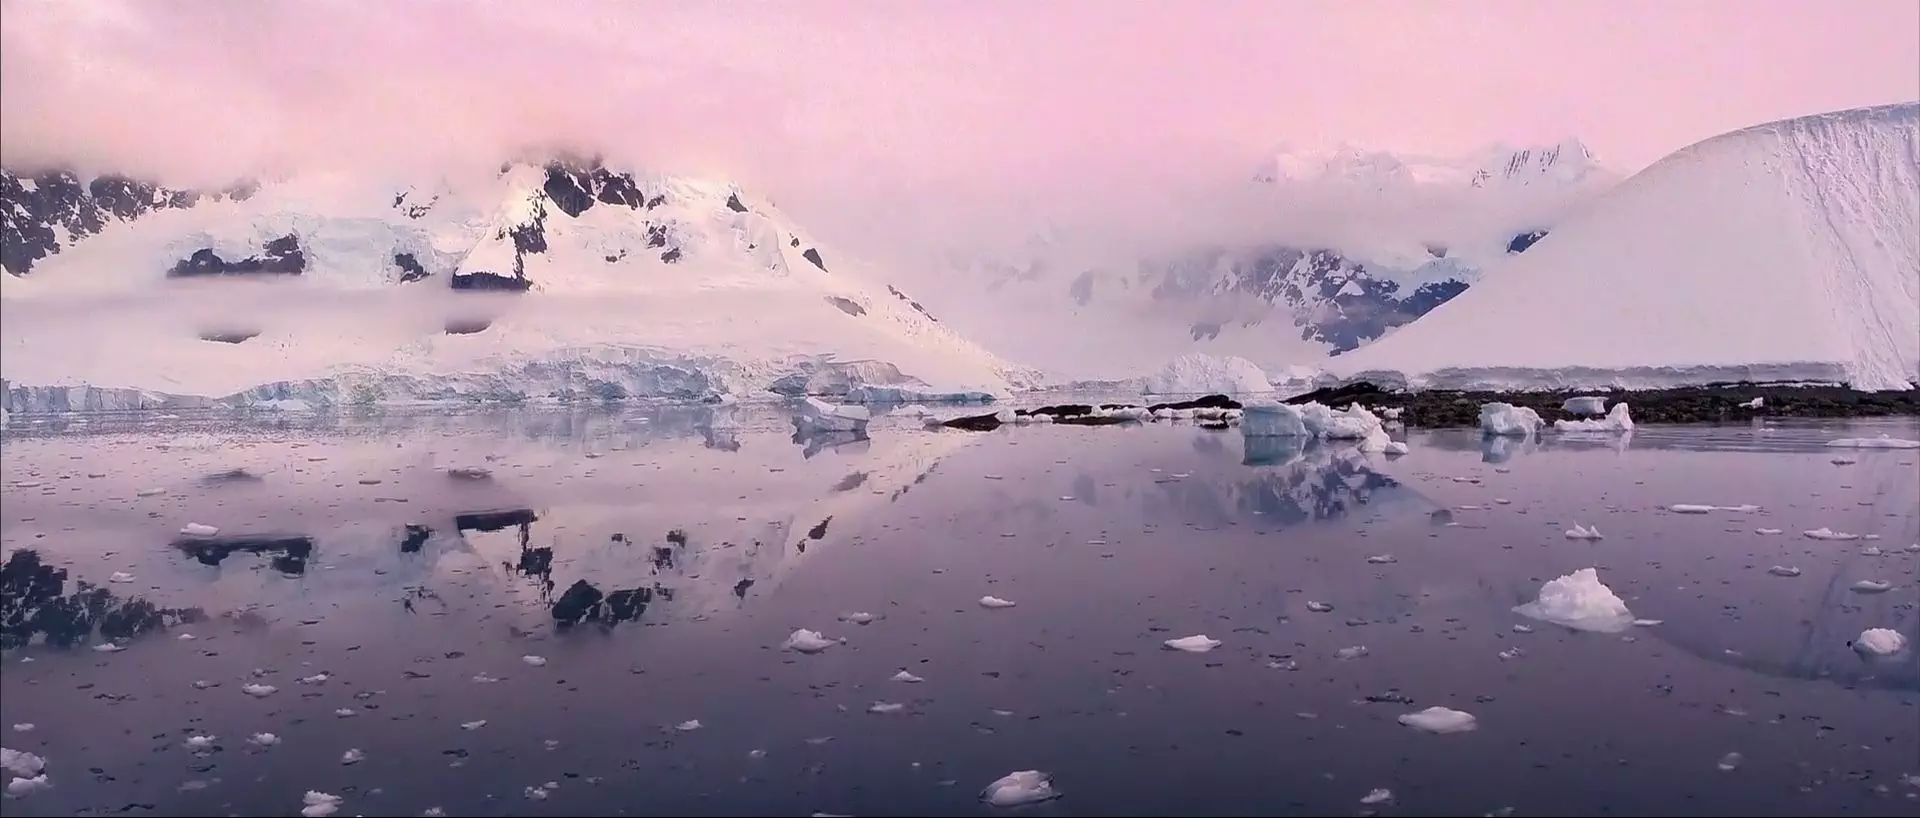 Antarctica Screencap